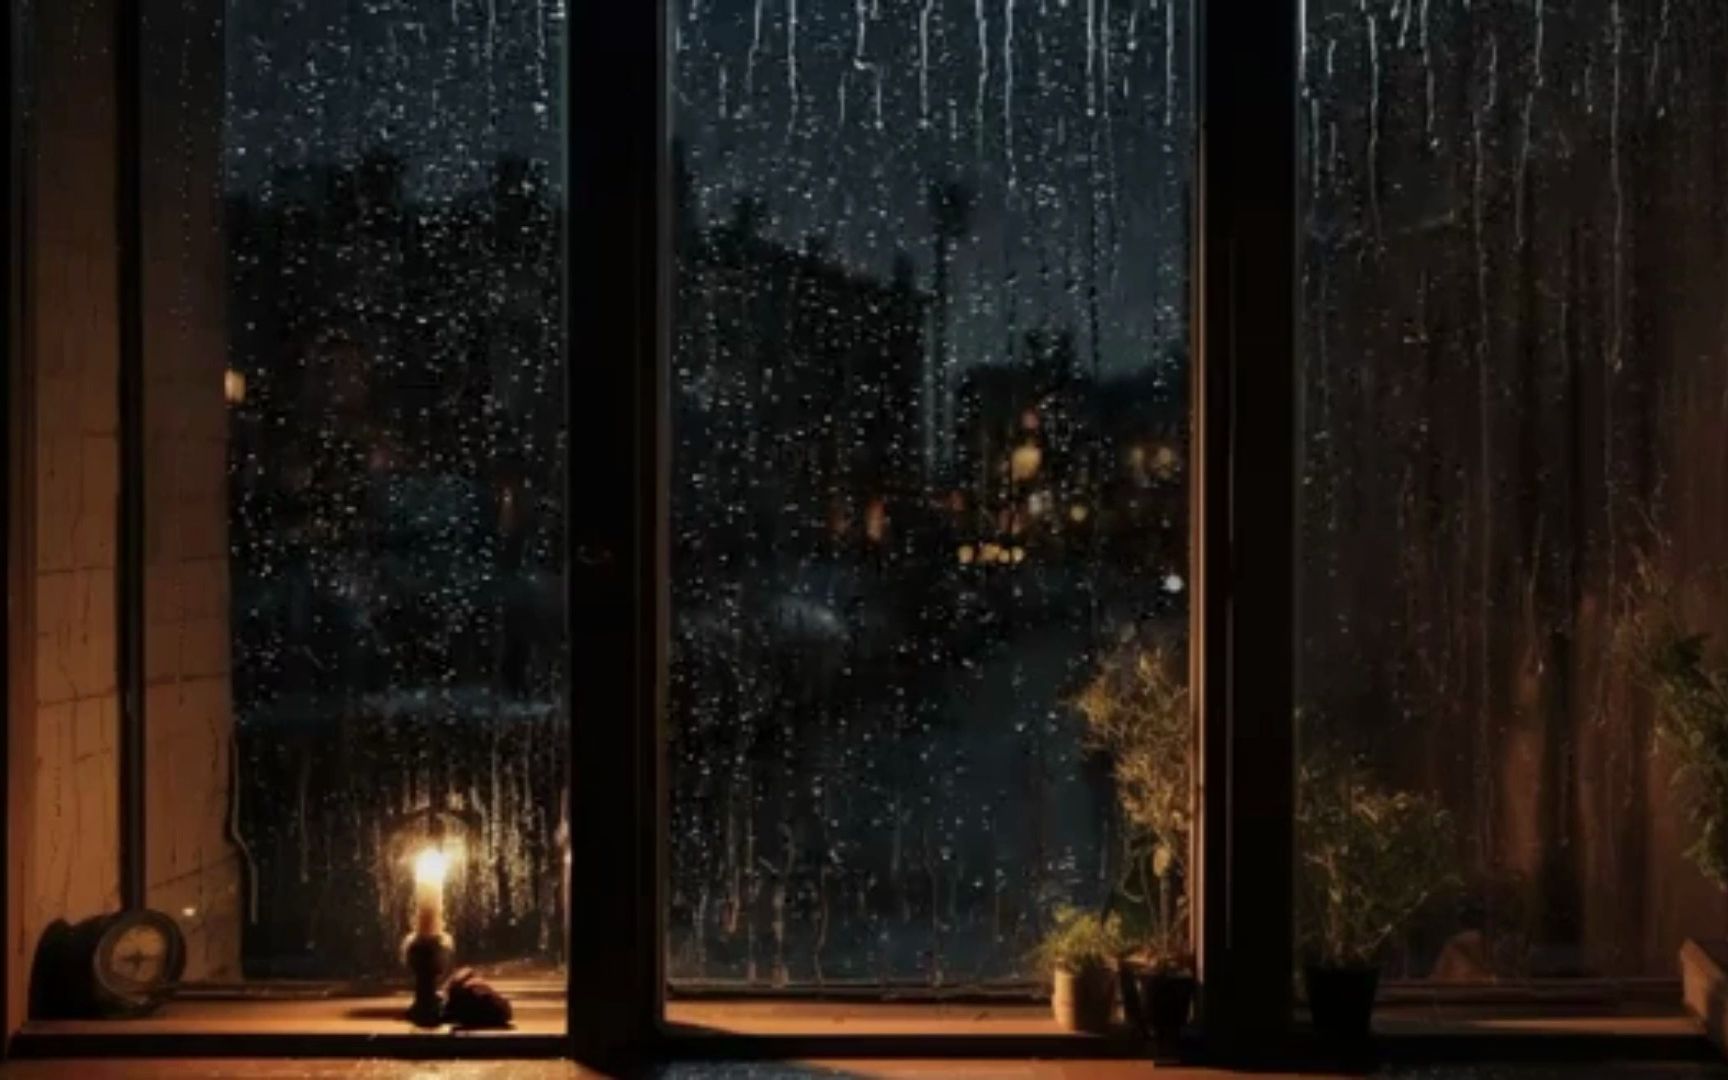 解压助眠雨声,经过一天的劳累晚上回屋里休息外面下起了雨看窗外的雨